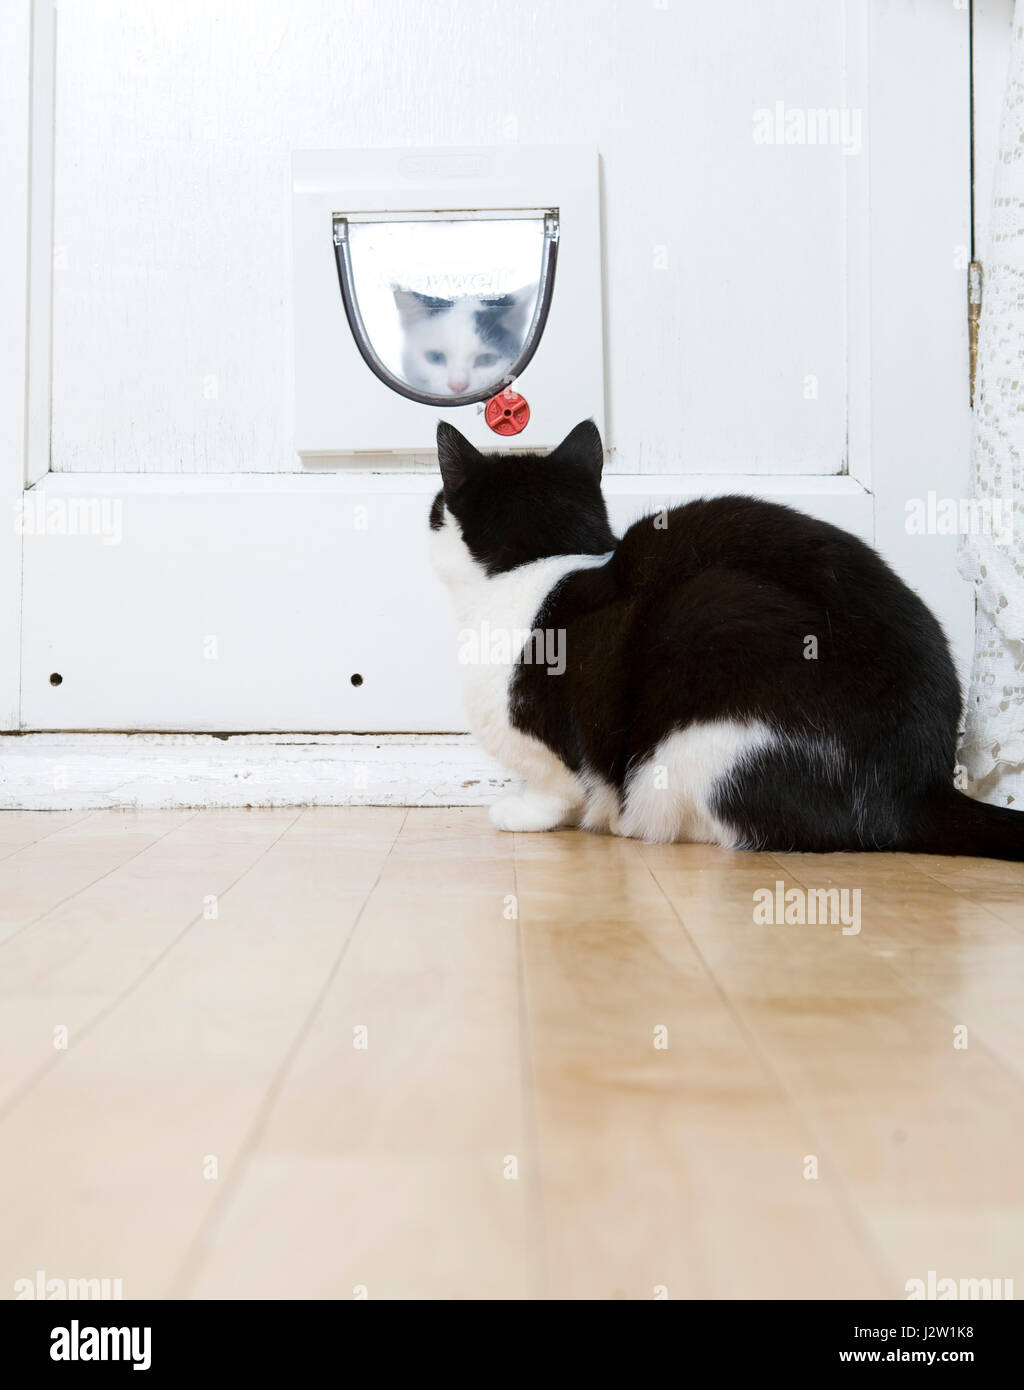 Schwarz-weiße Katze (Felis catus) in Innenräumen bei einer anderen Katze versucht, durch die katzenklappe von außen zu erhalten suchen Stockfoto